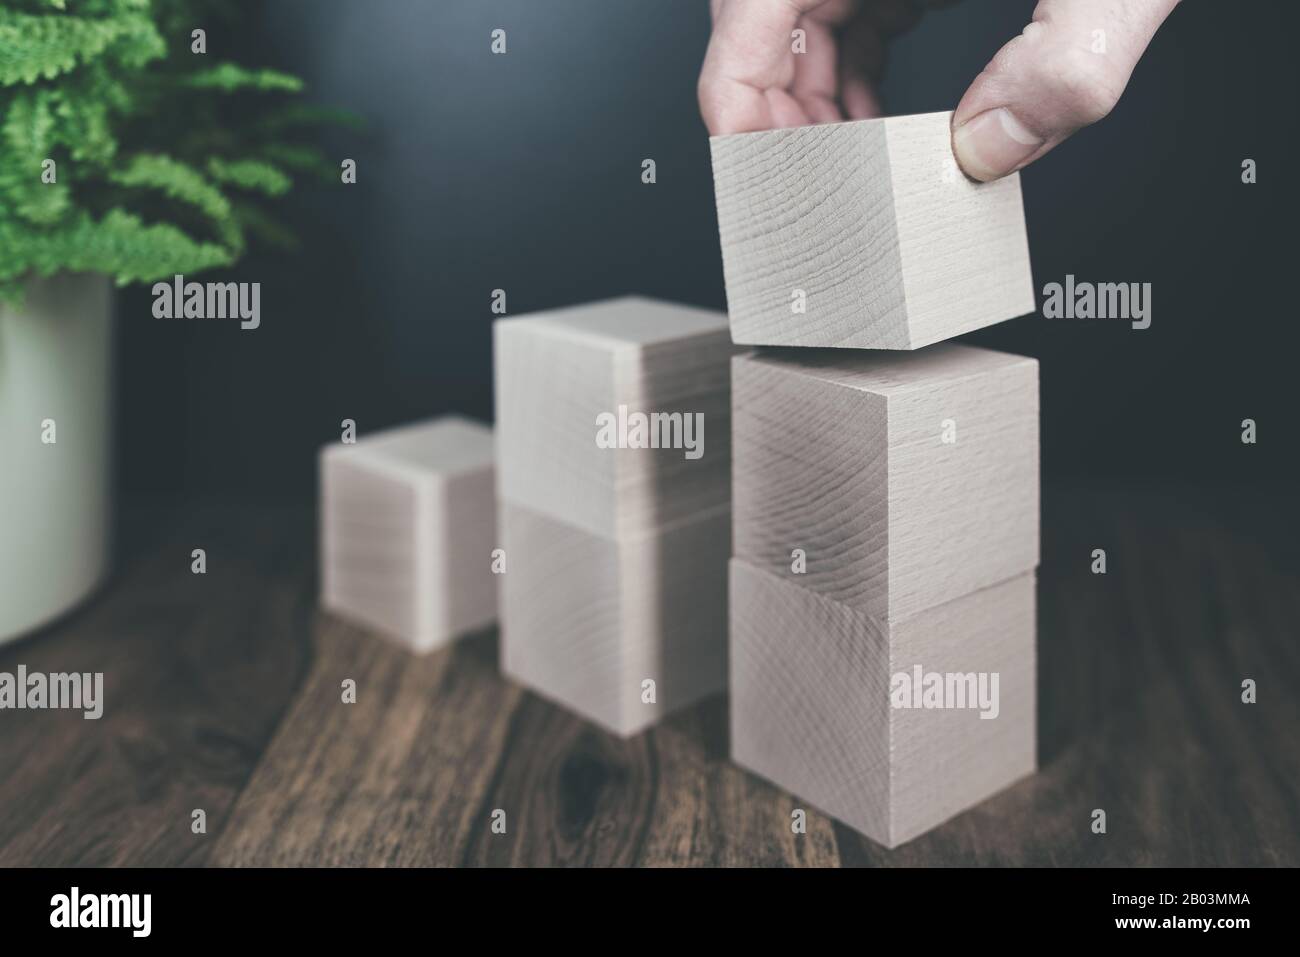 gros plan de blocs de bois empilables à la main dans les étapes, le concept de croissance économique ou commerciale Banque D'Images